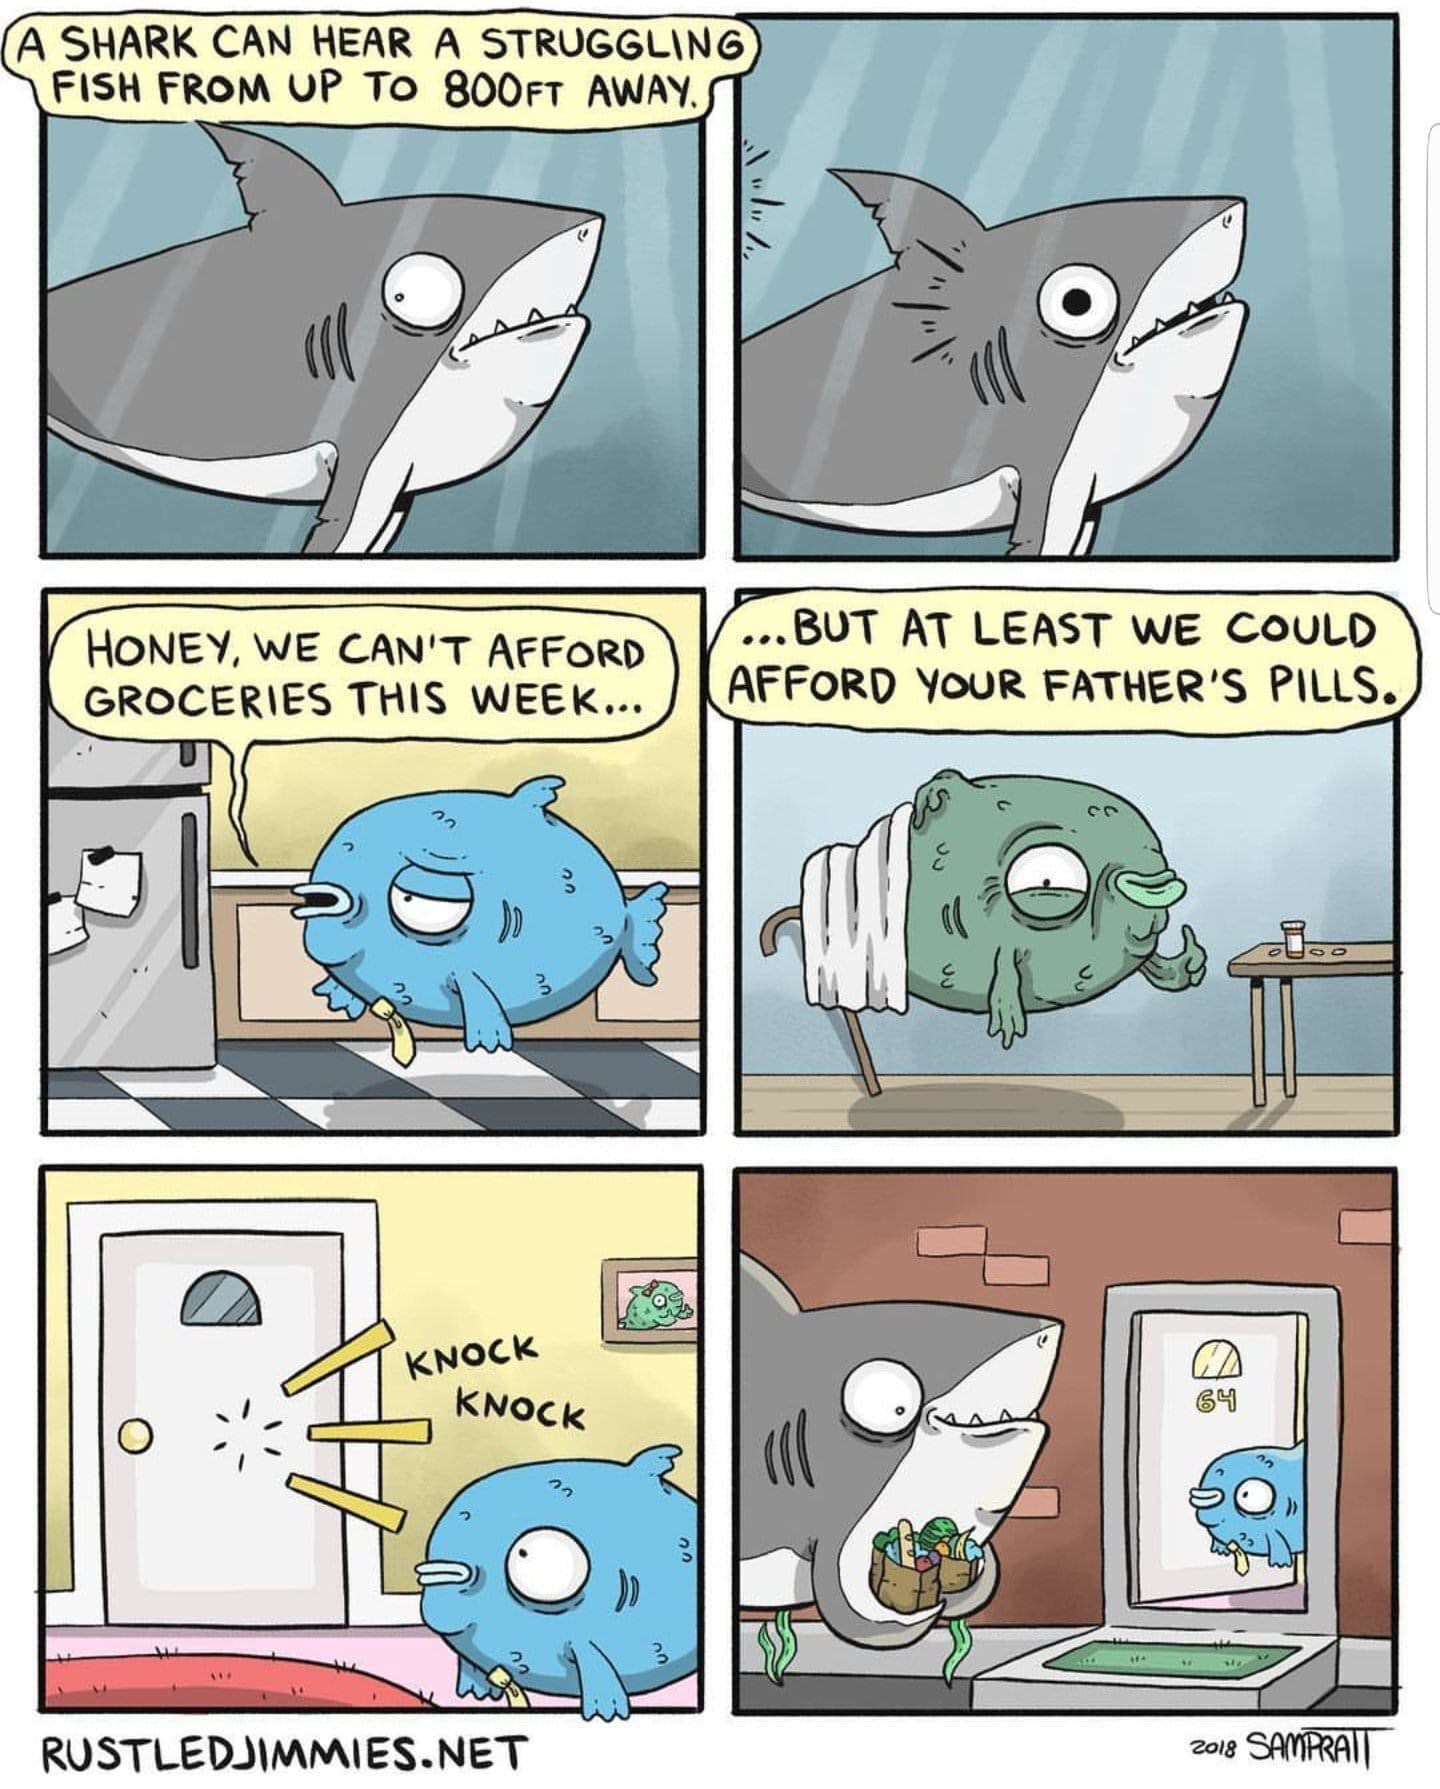 Wholesome shark do do to do do wholesome shark do do - meme